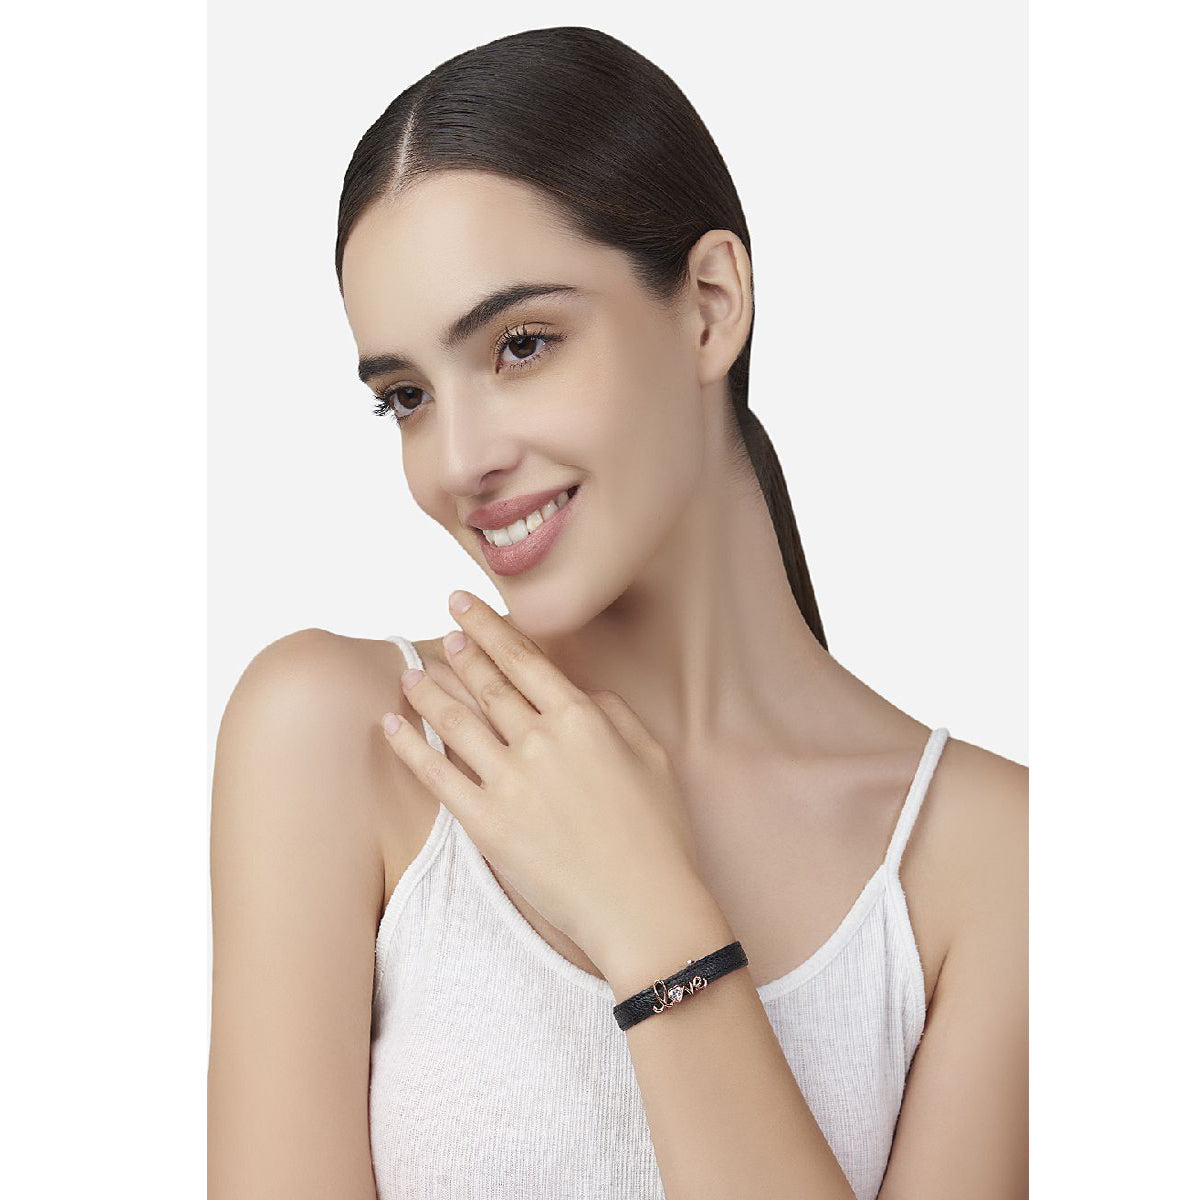 Shop Wrist Watches Sunglasses Bracelets Electronics for Men & Women